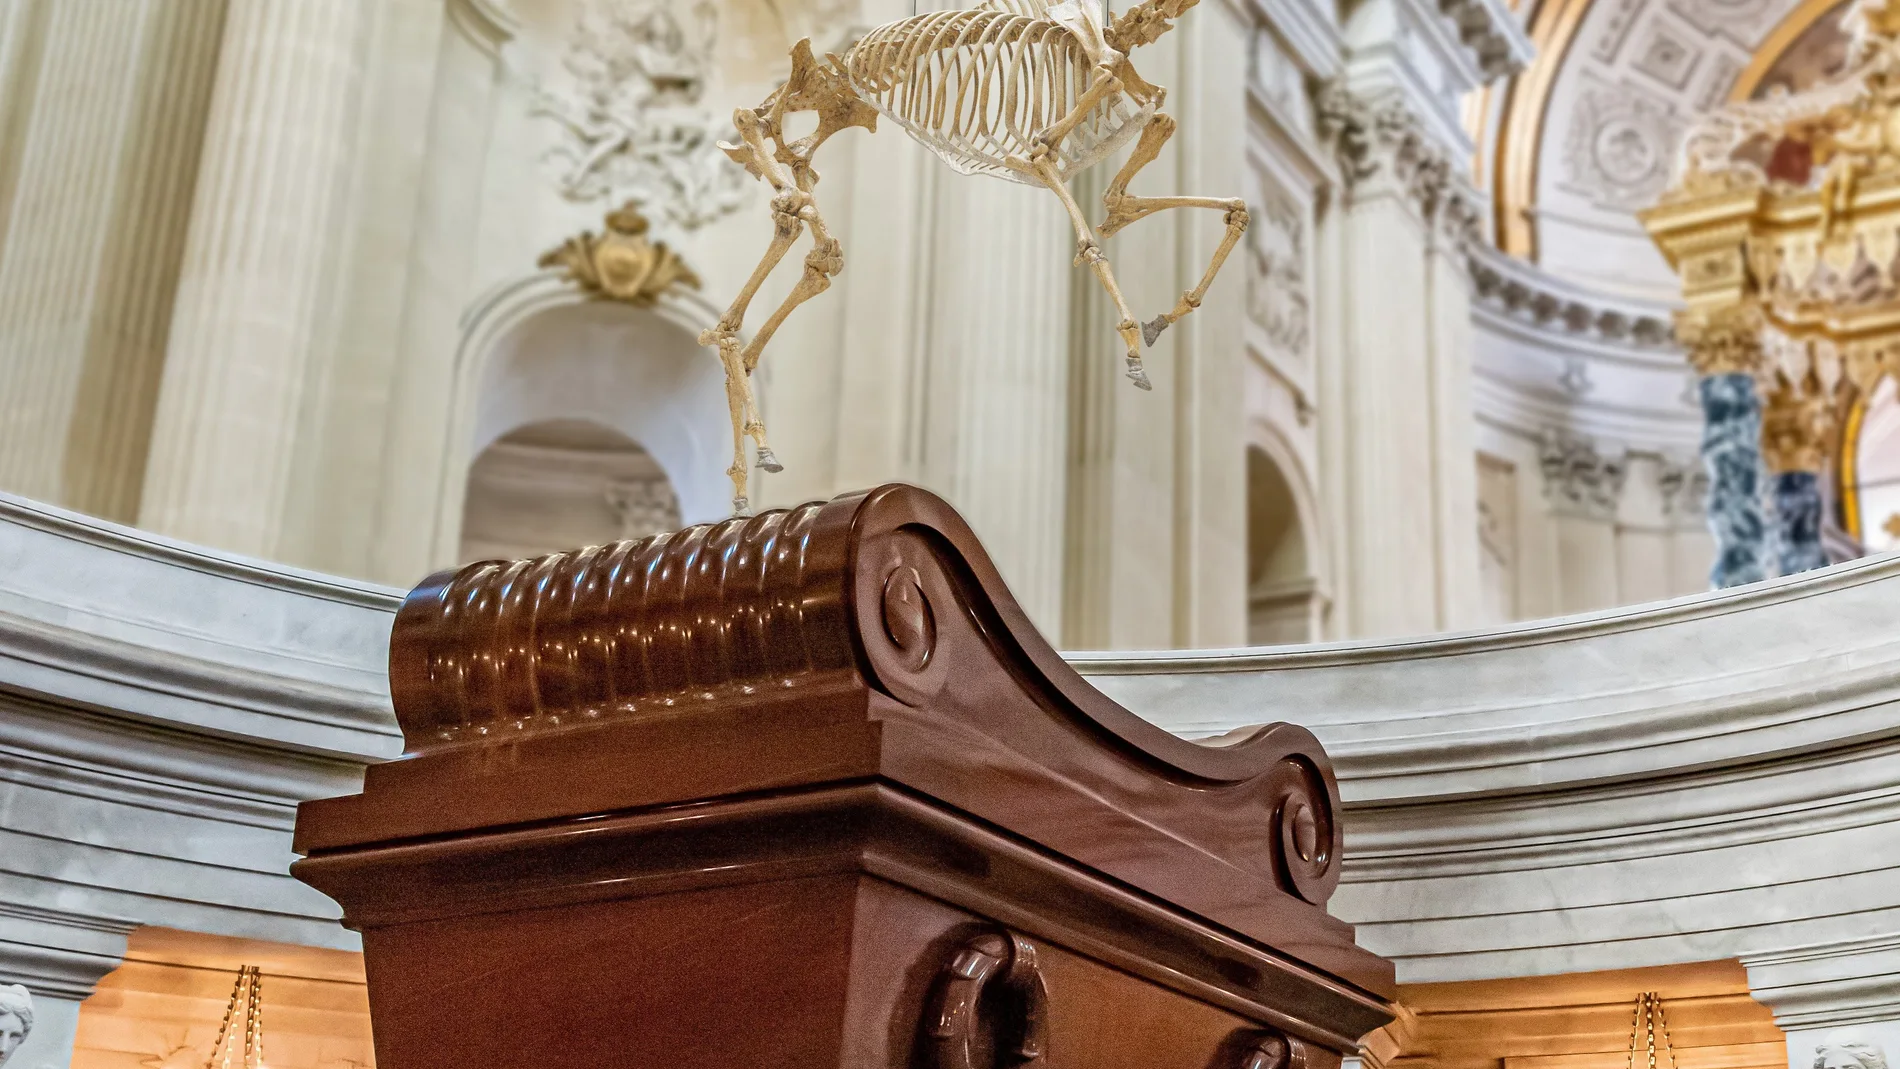 El esqueleto del caballo preferido de Napoleón suspendido sobre la monumental tumba del Emperador